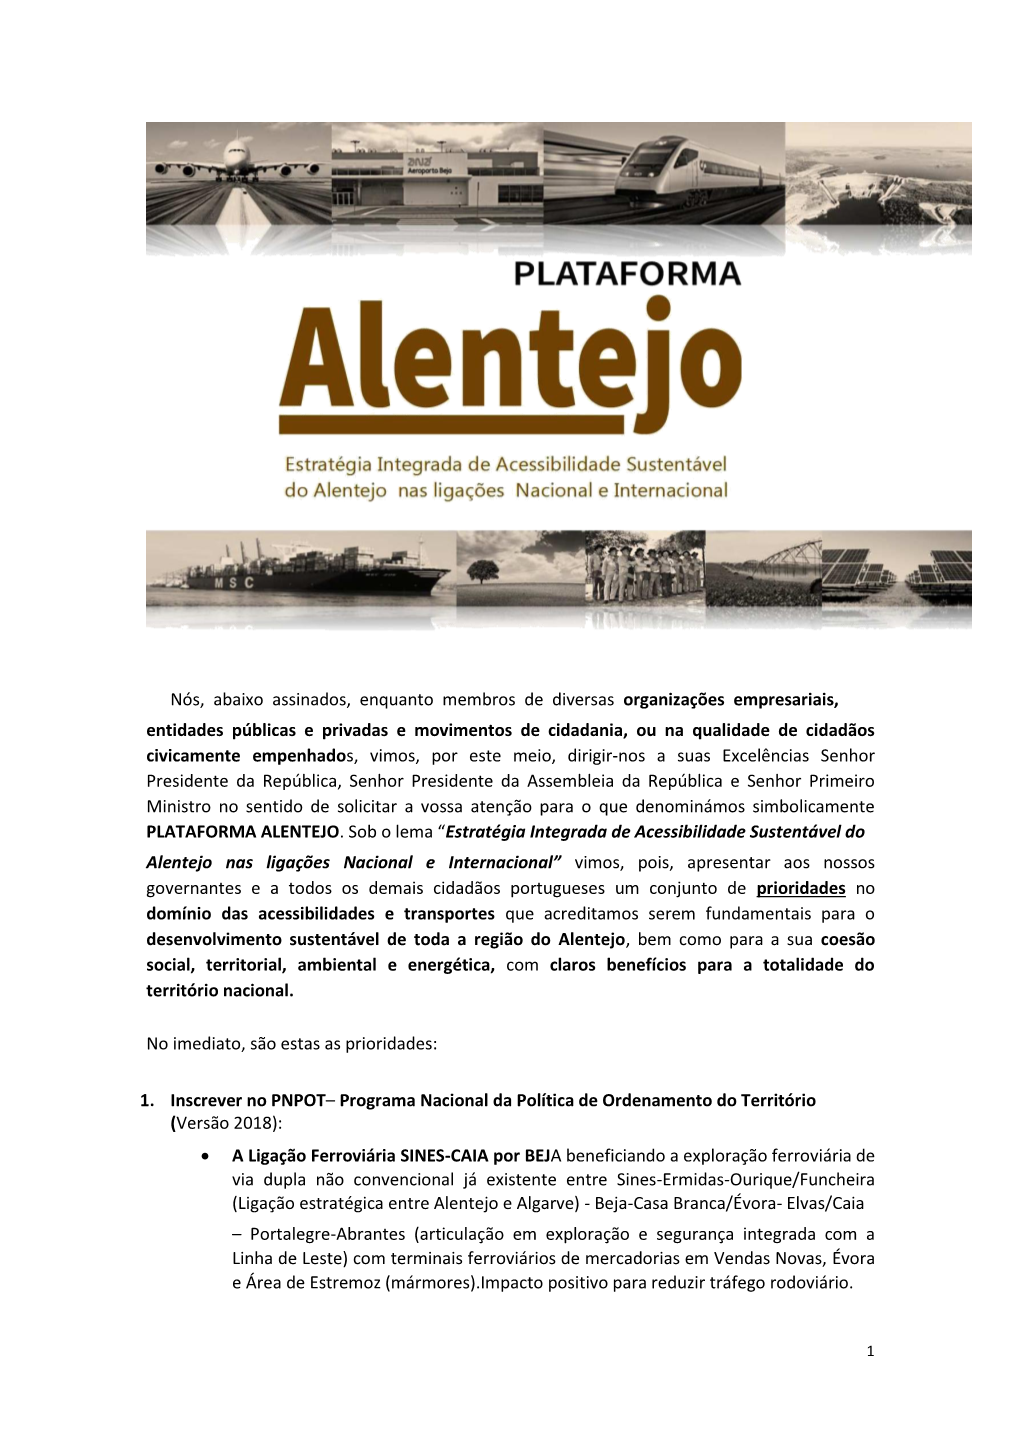 Plataforma Alentejo